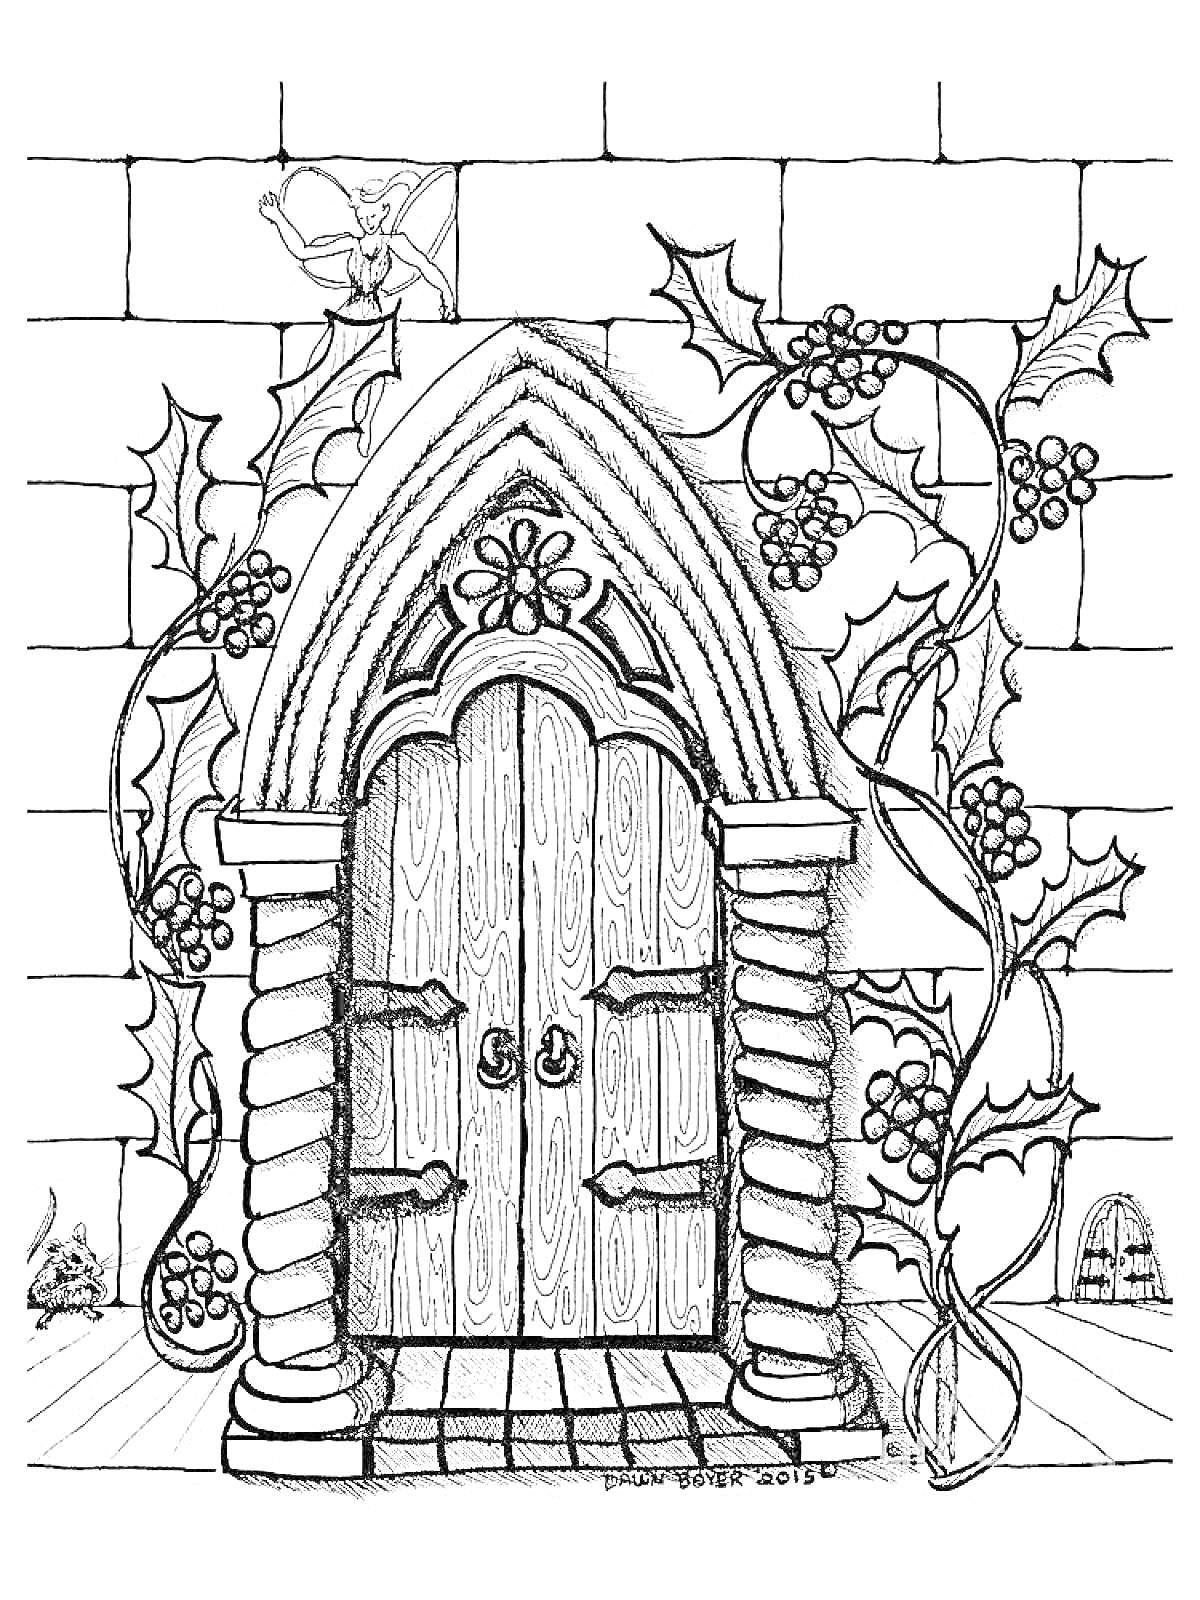 Раскраска Дверь в готическом стиле с декоративной аркой и растительным орнаментом, обвитая виноградными лозами. Петух на крыше здания.